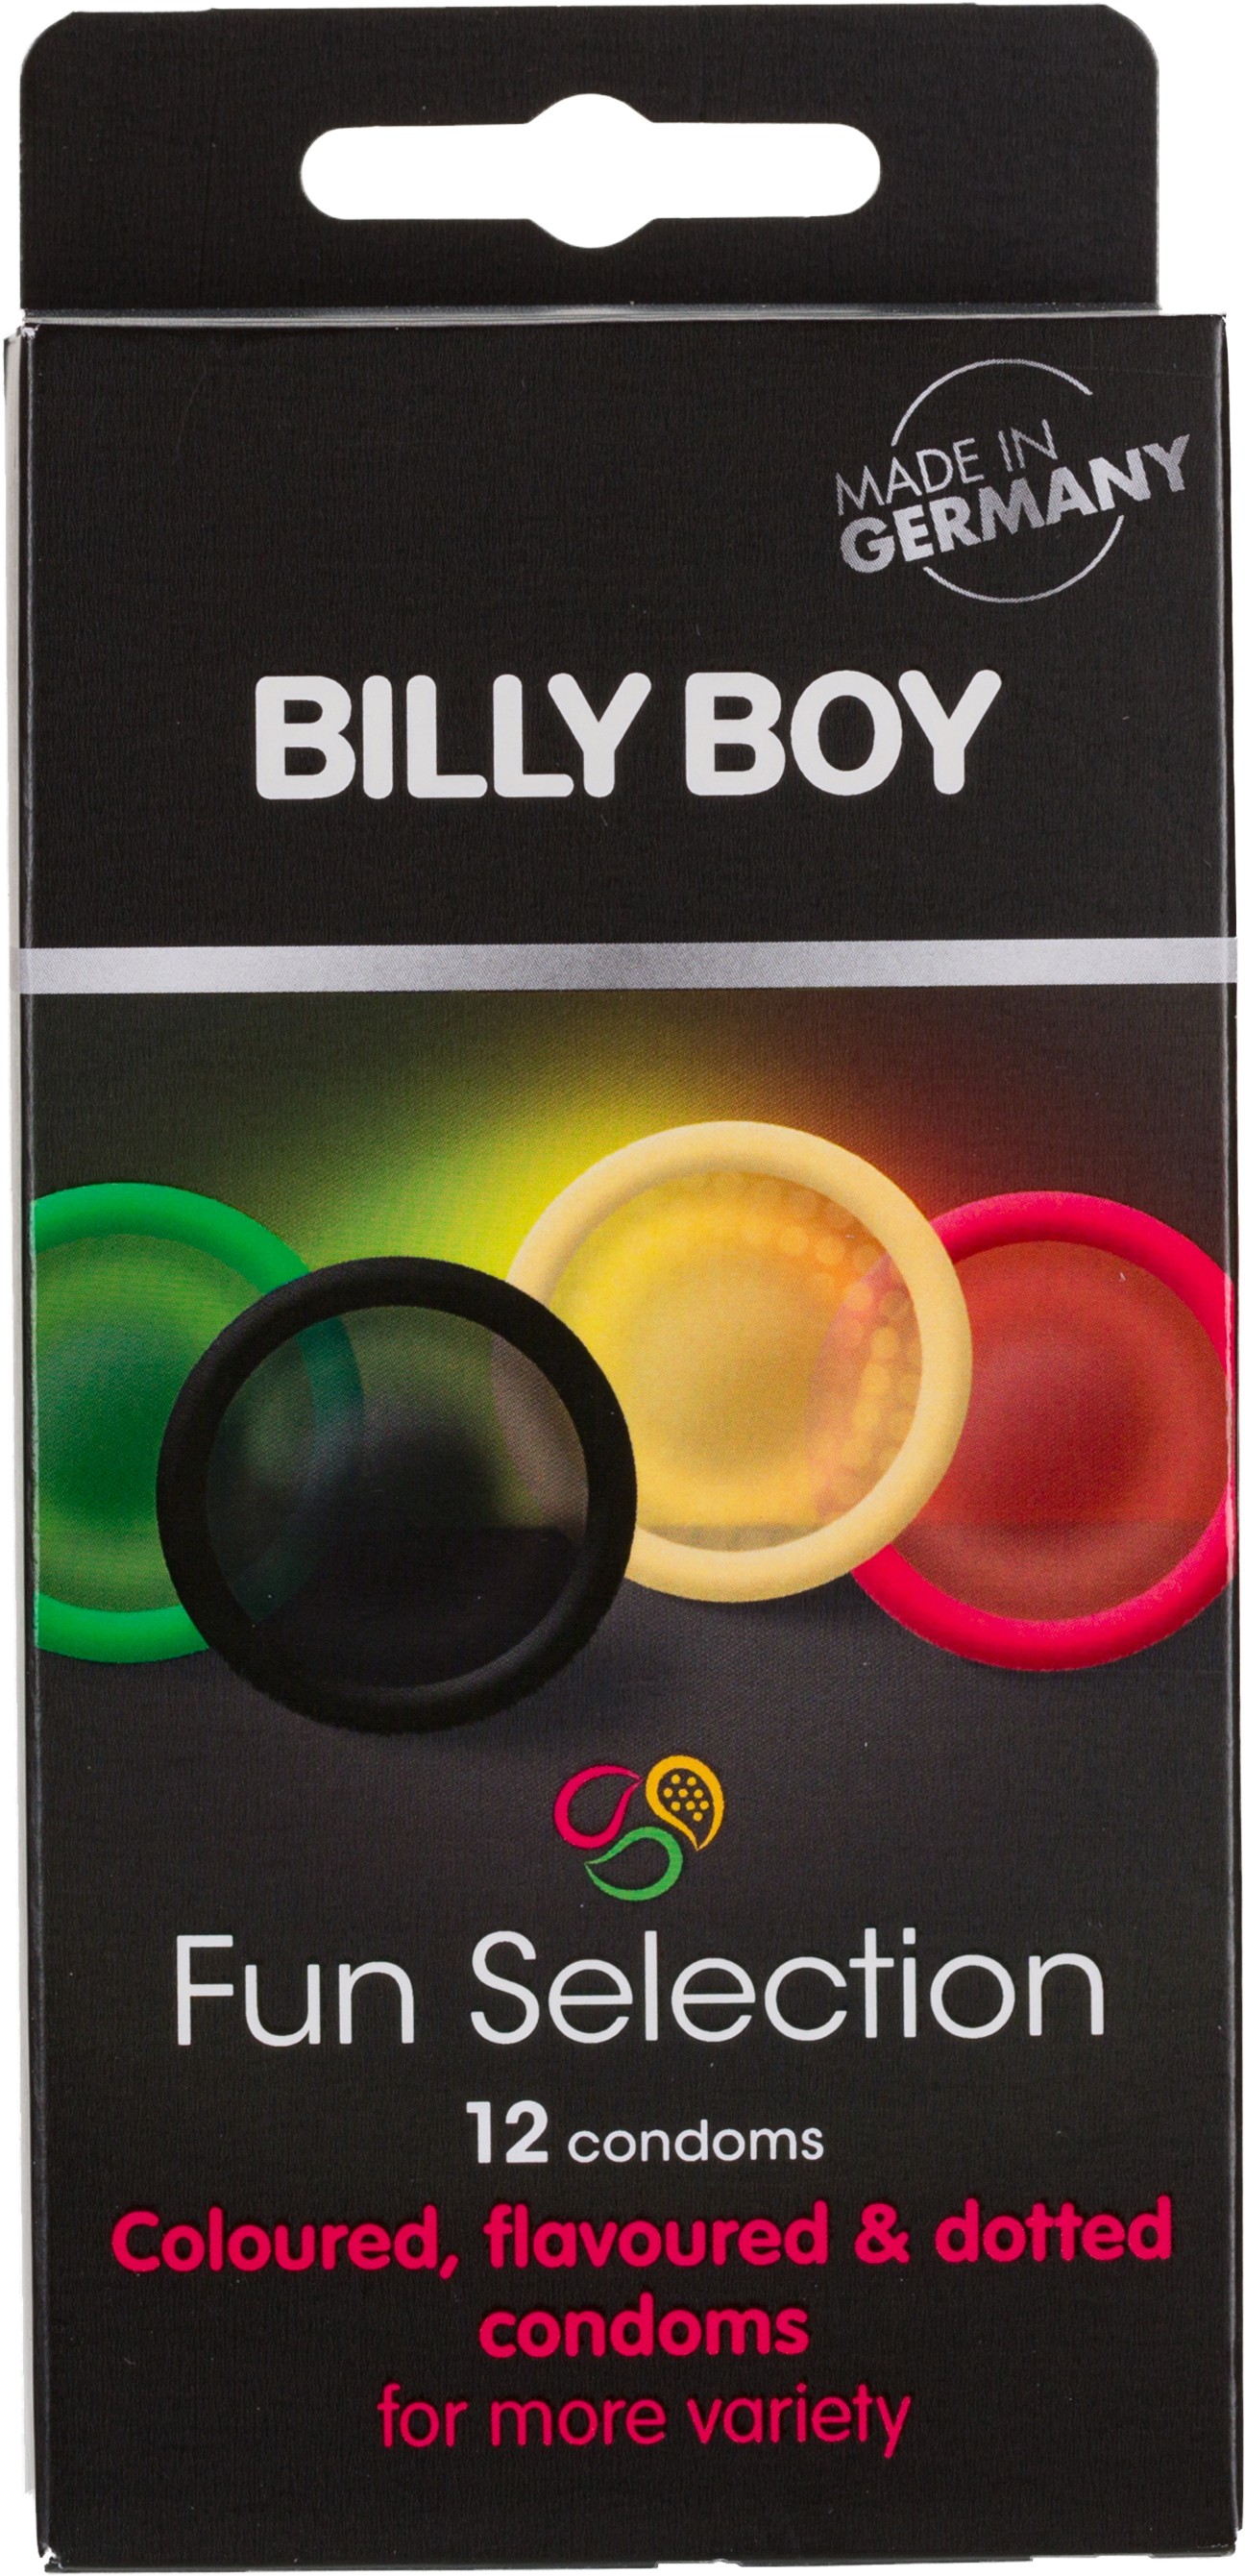 Billy Boy prezervatīvi Fun Selection 12gb.